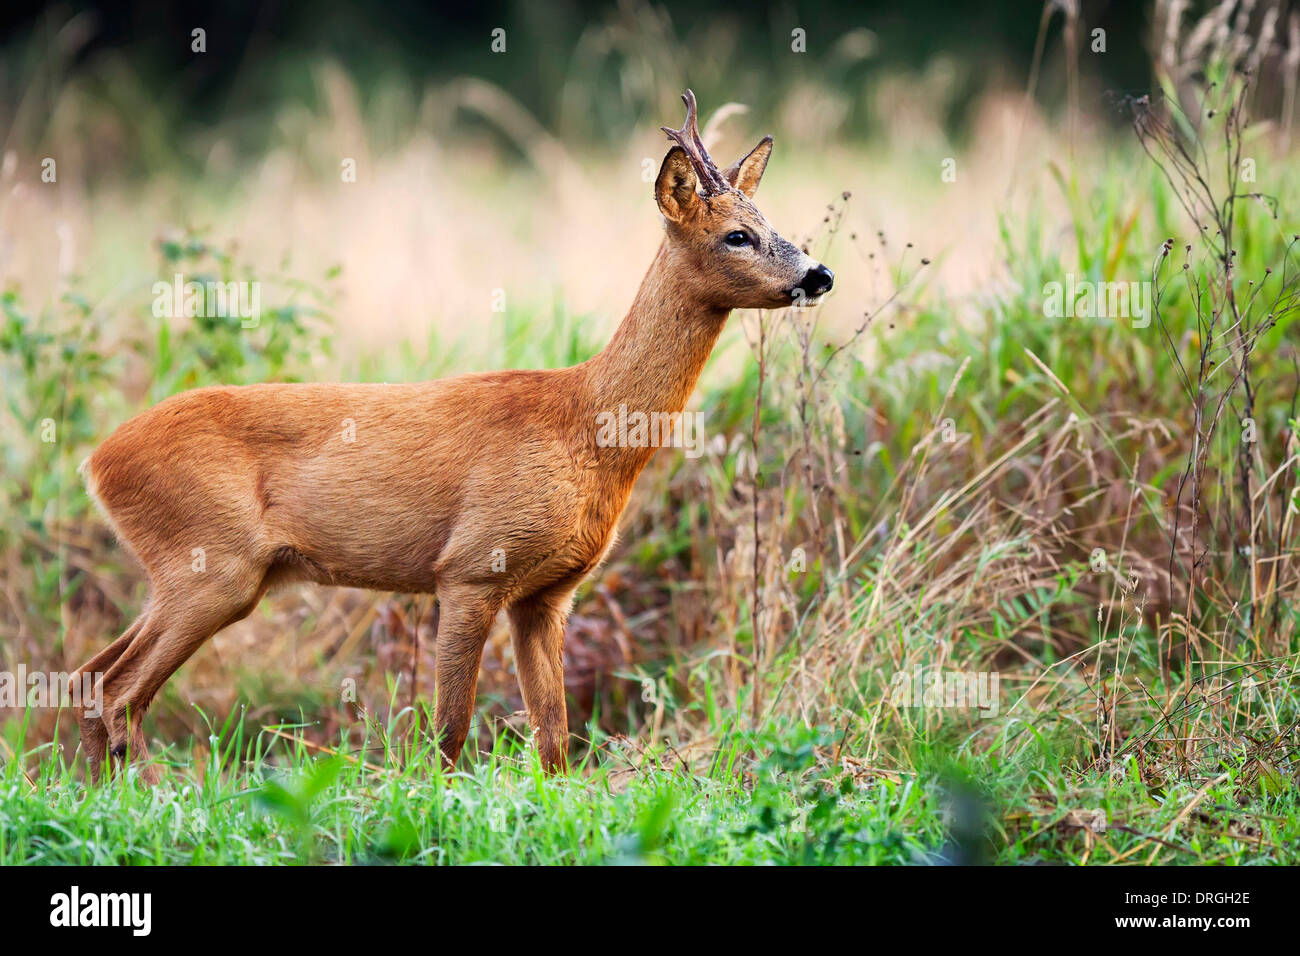 Buck deer in the wild Stock Photo